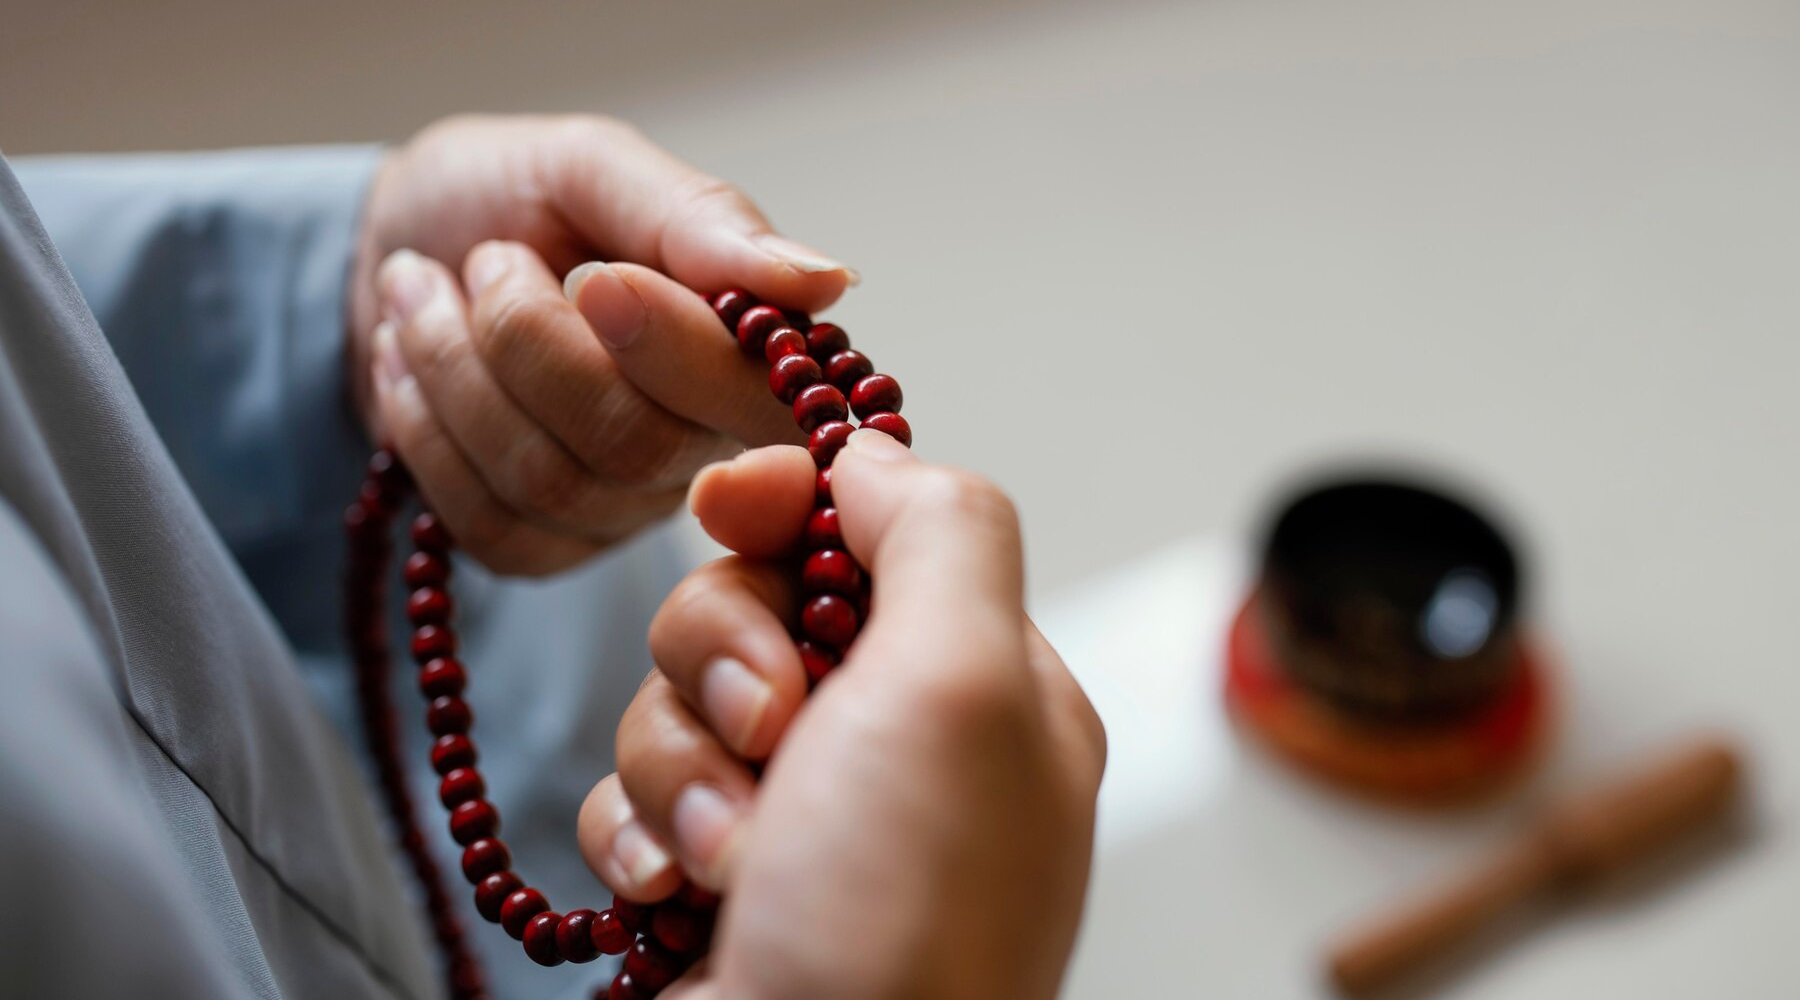 Doa Malam Jumat untuk Wanita: Memohon Berkah dan Kebaikan